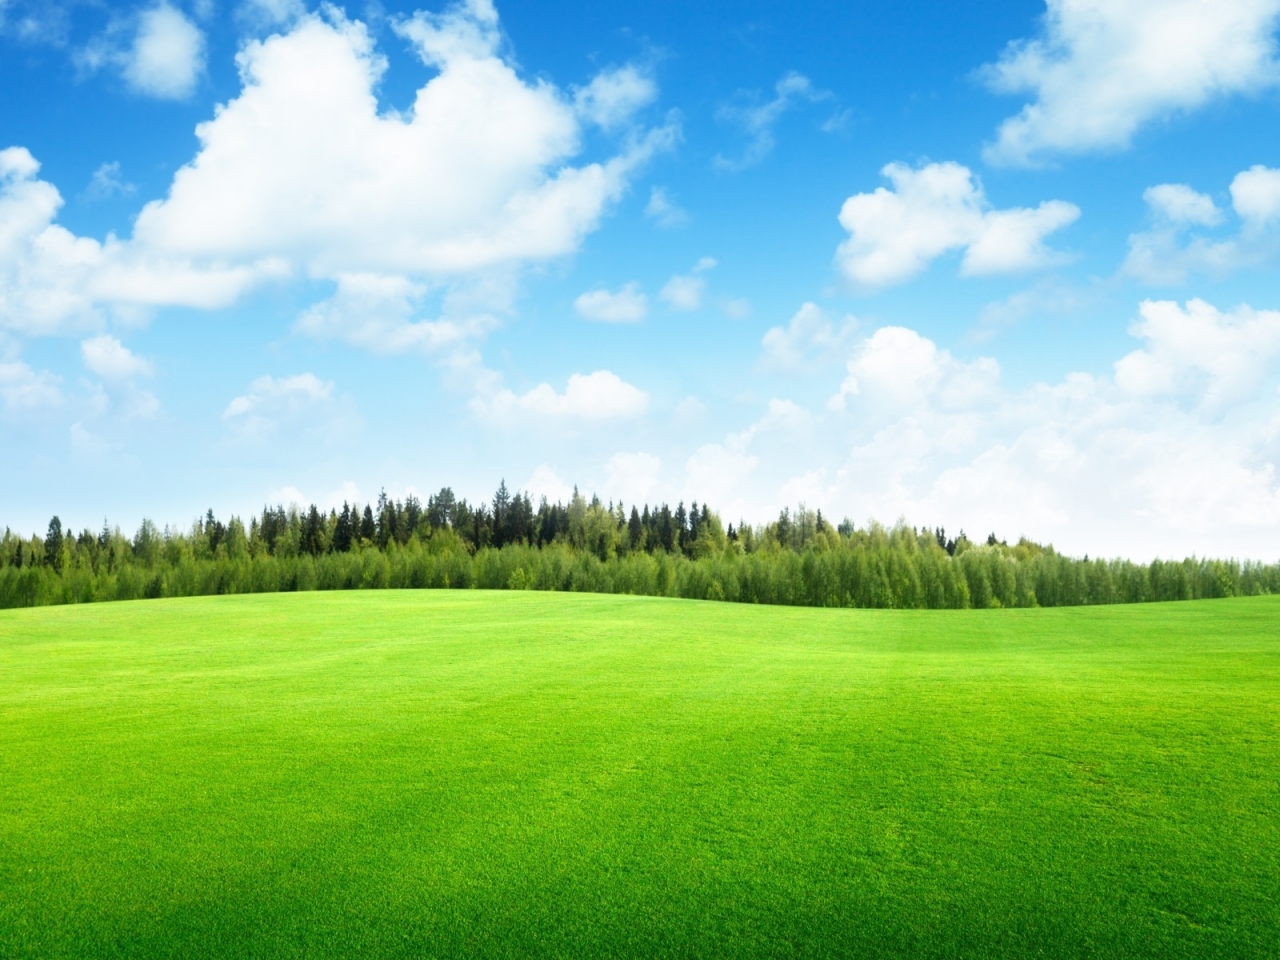 Beaufitul Green Grass Field for 1280 x 960 resolution